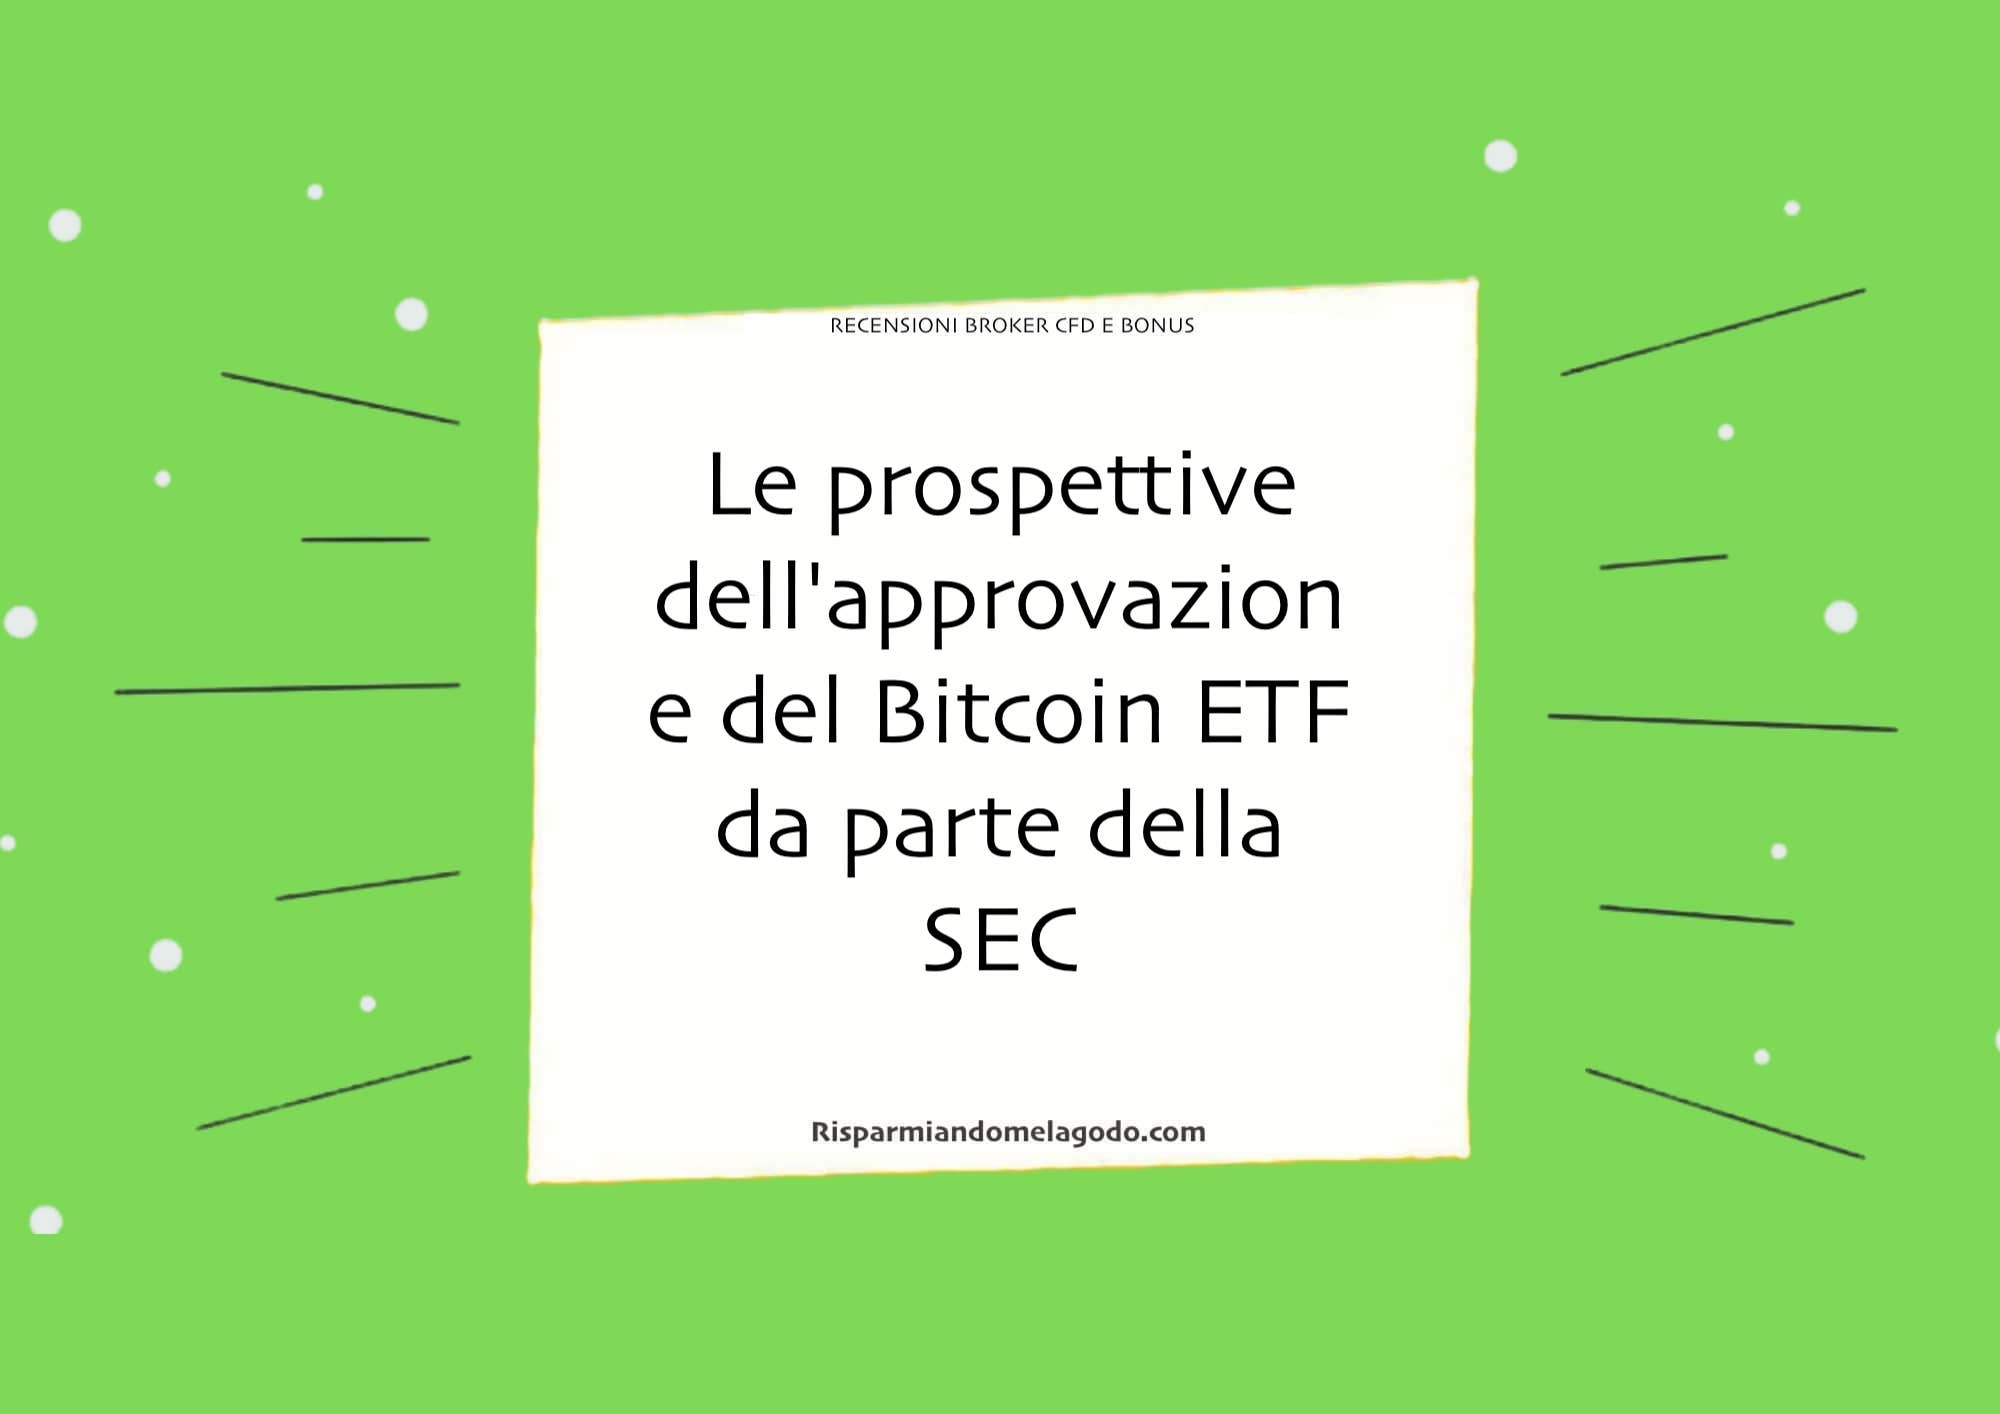 Le prospettive dell'approvazione del Bitcoin ETF da parte della SEC